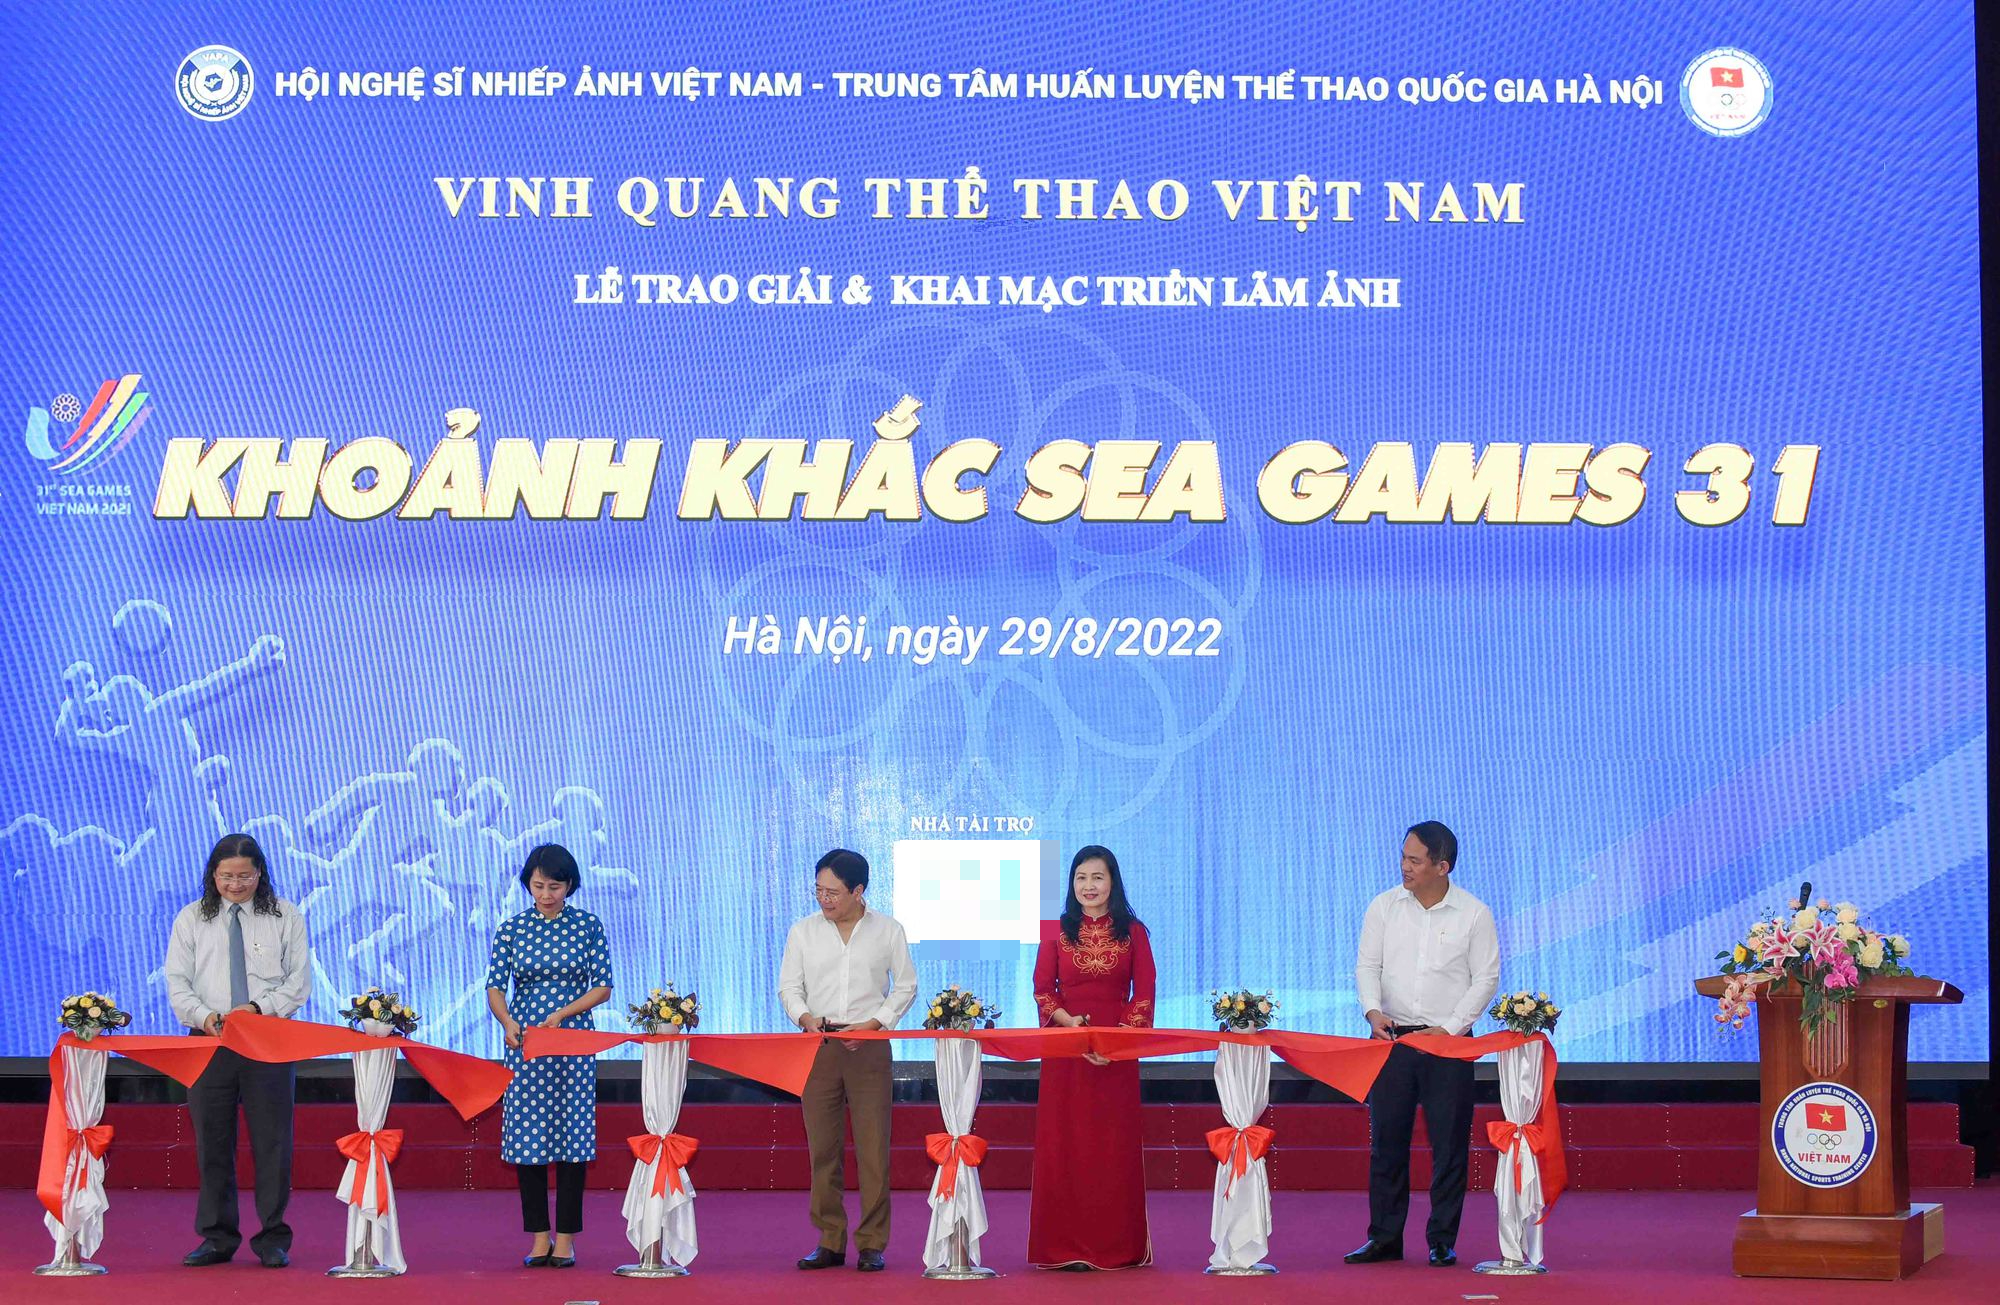 Lần đầu công bố những khoảnh khắc ấn tượng của SEA Games 31 - Ảnh 1.